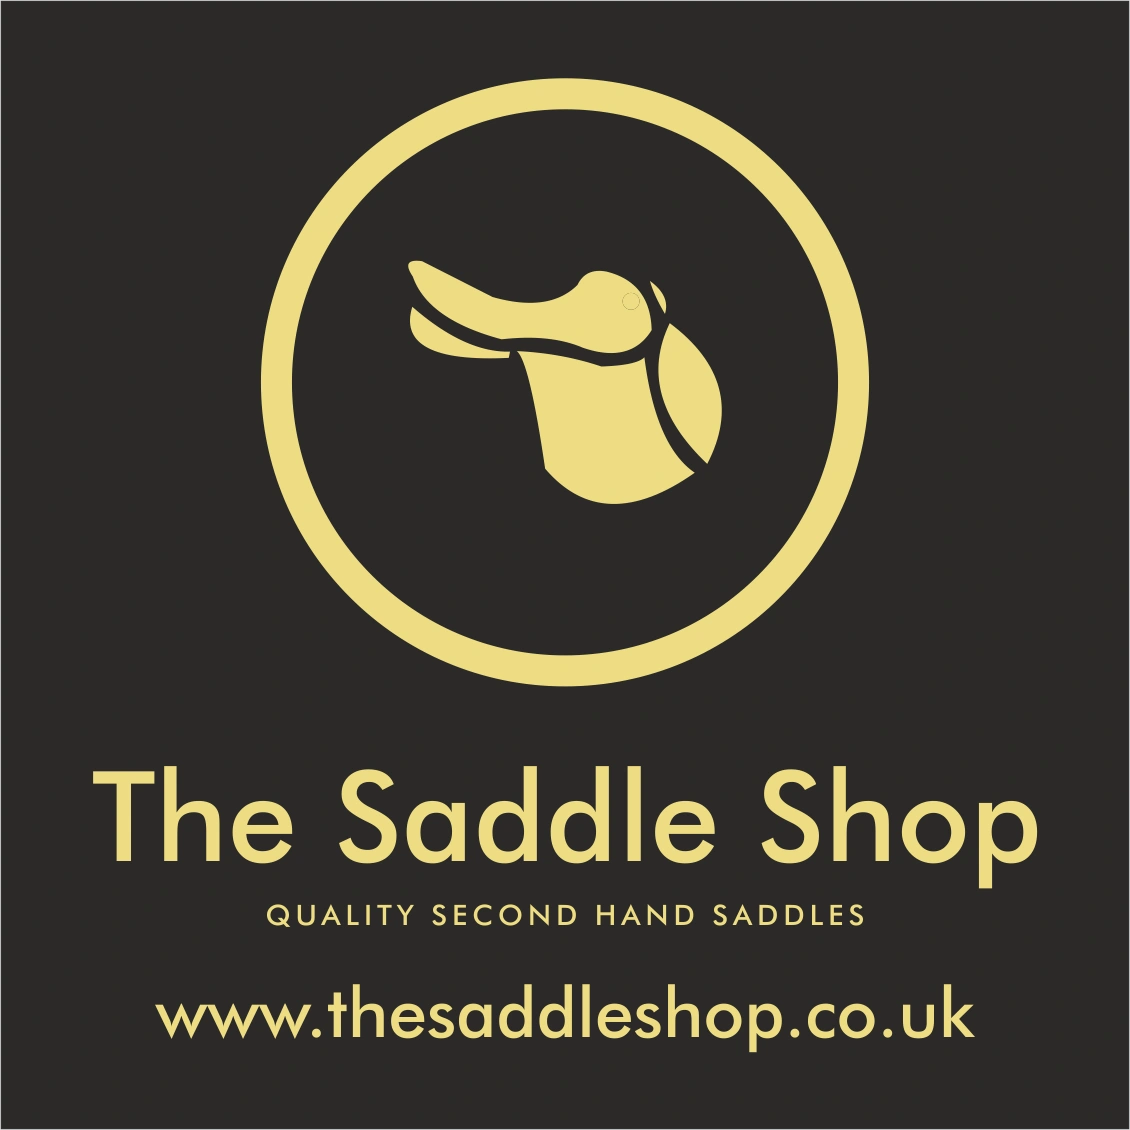 (c) Thesaddleshop.co.uk